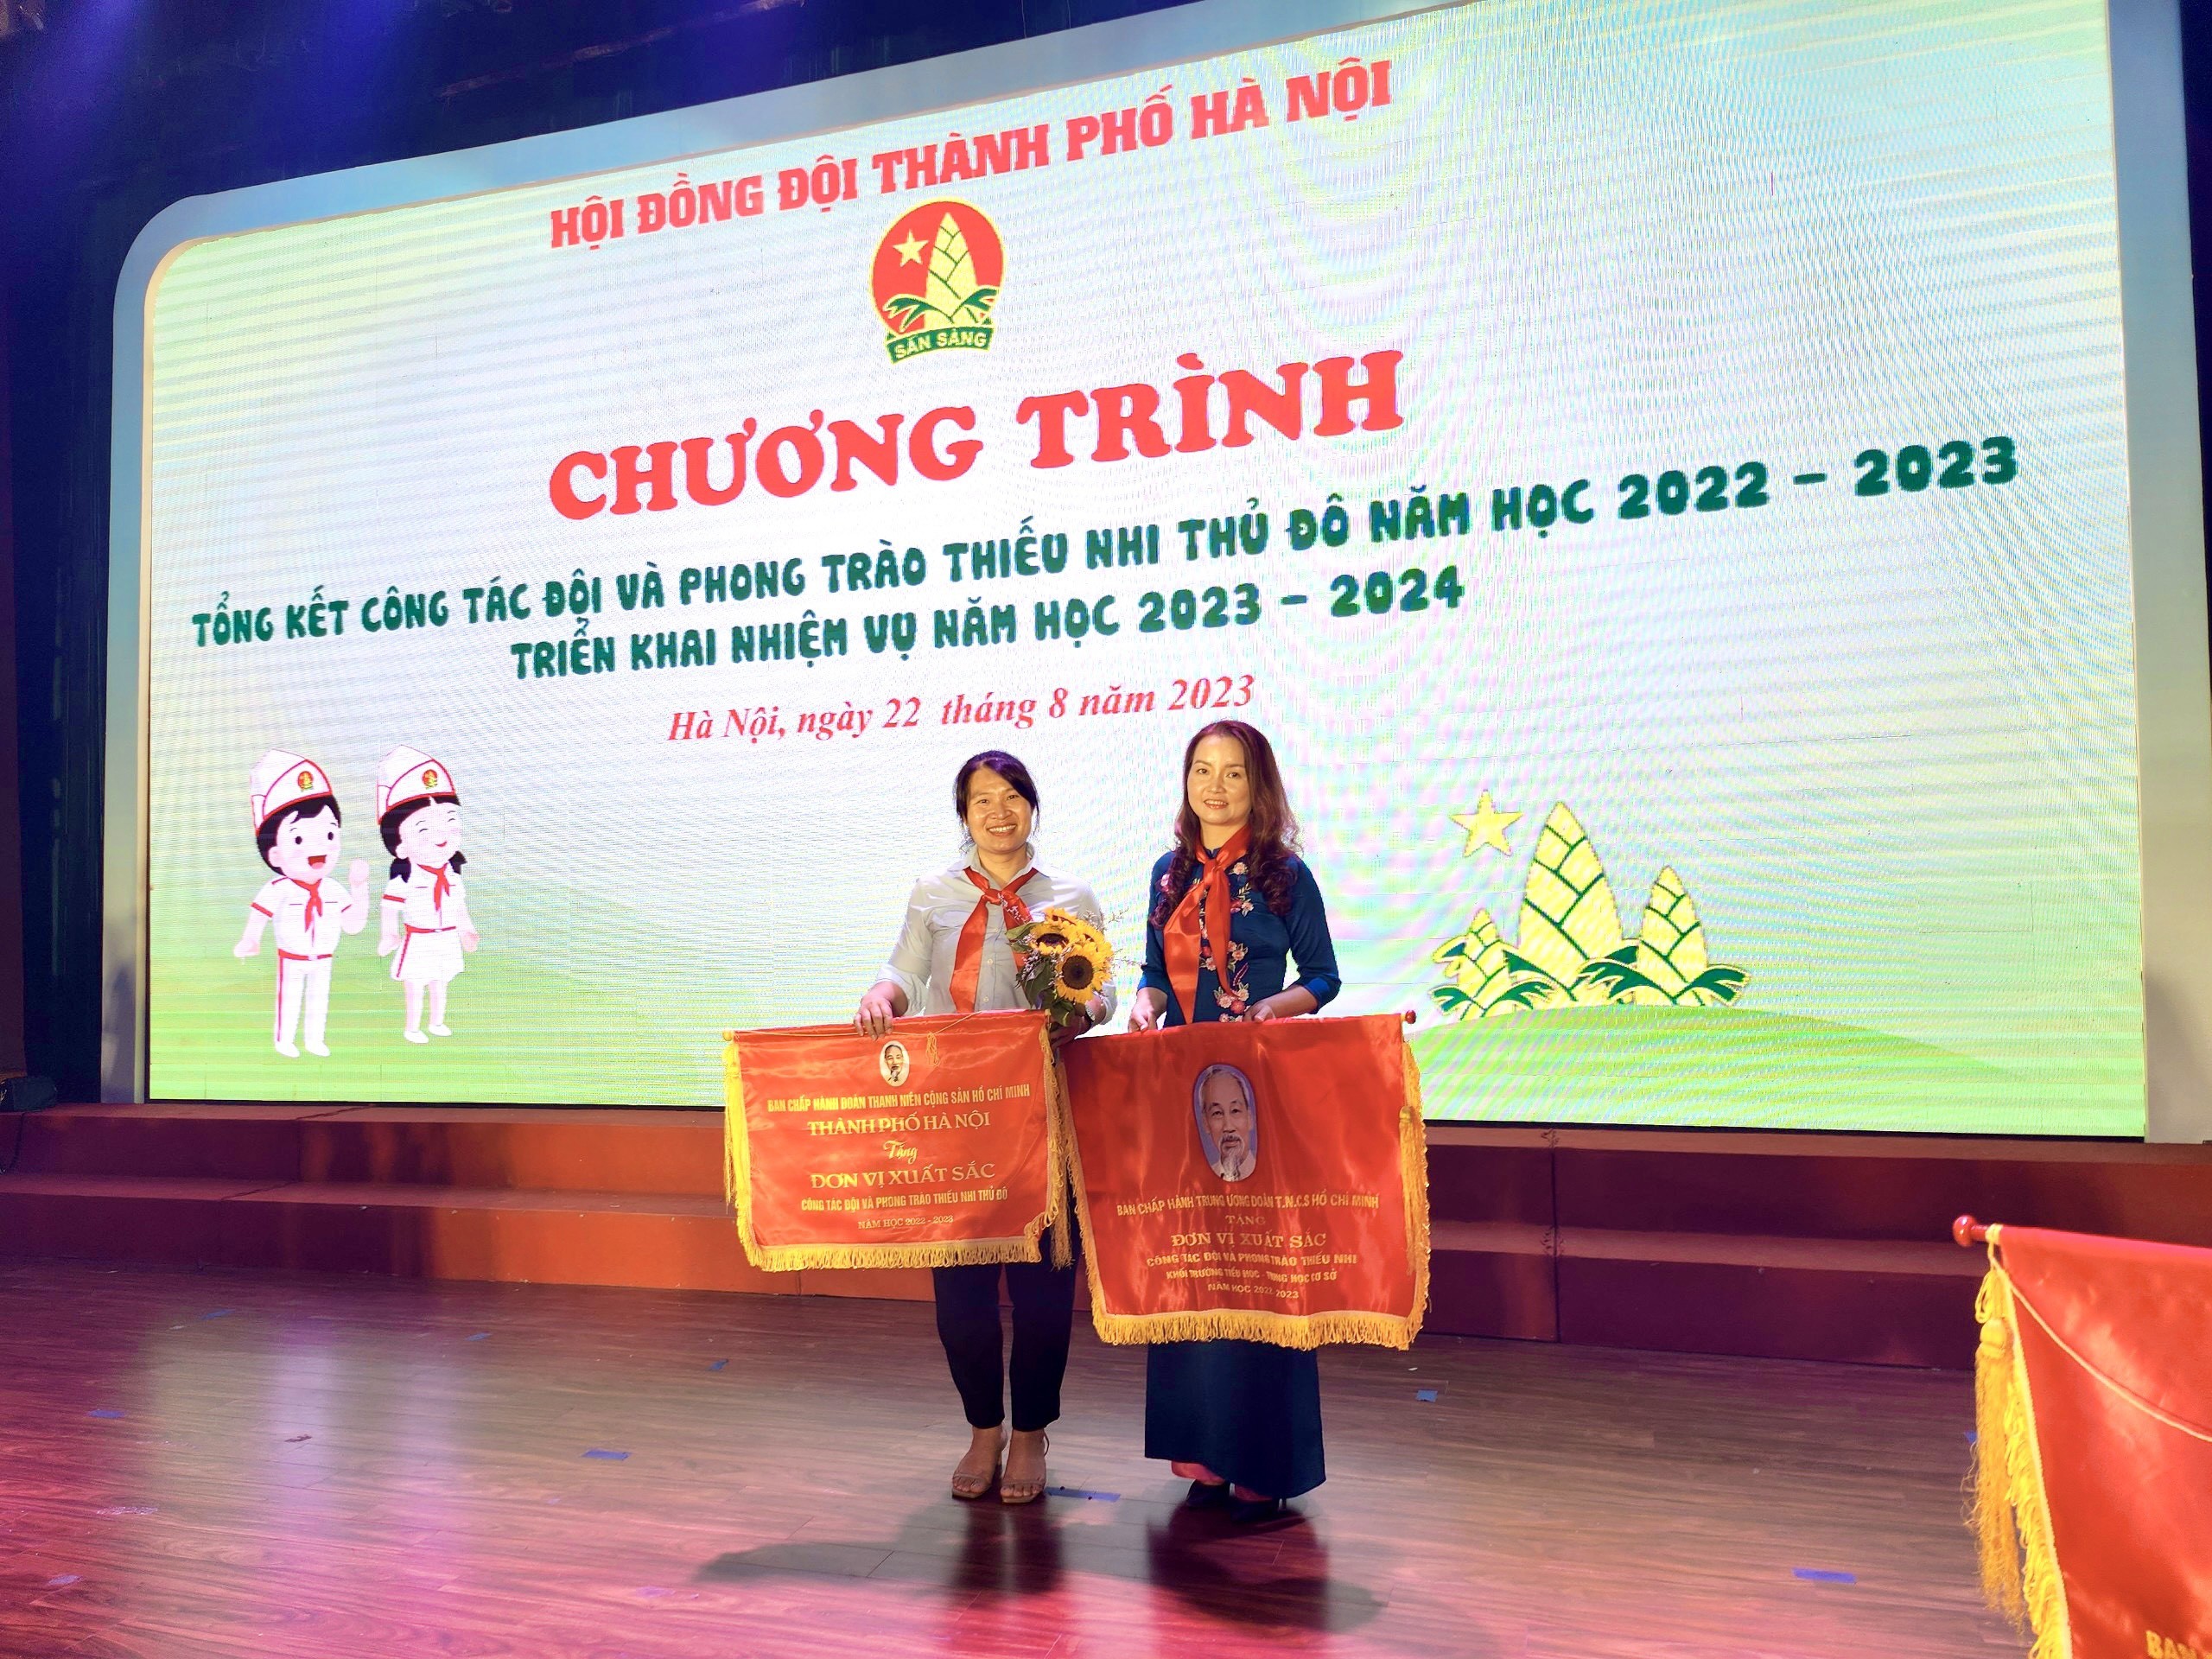 Liên đội trường Tiểu học Vân Canh đón nhận Cờ thi đua xuất sắc trong công tác Đội và phong trào Thiếu nhi của TƯ Đoàn